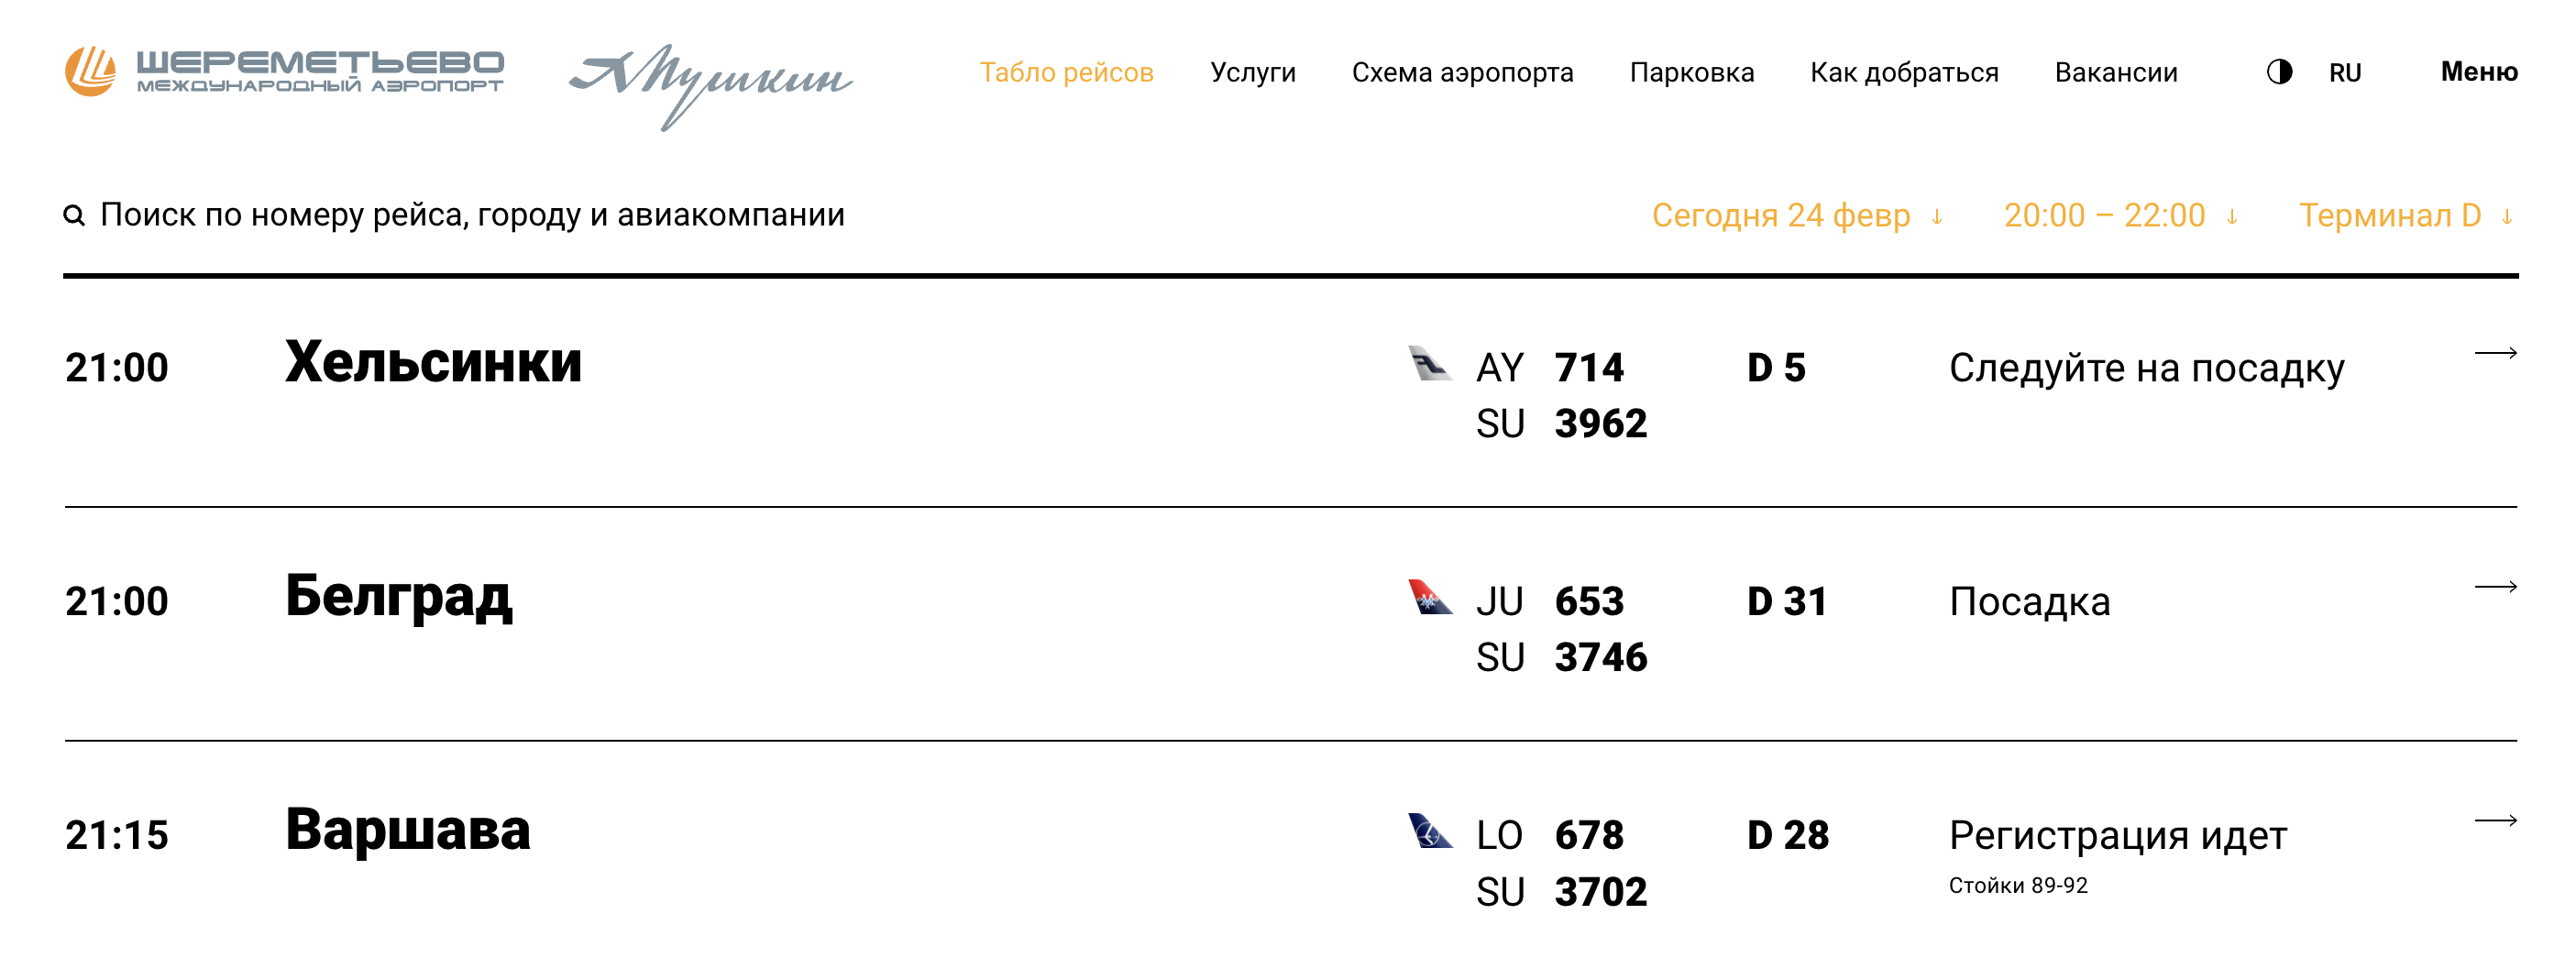 В Шереметьеве идет посадка на рейсы в Хельсинки, Белград и регистрация на рейс в Варшаву. Источник: svo.aero